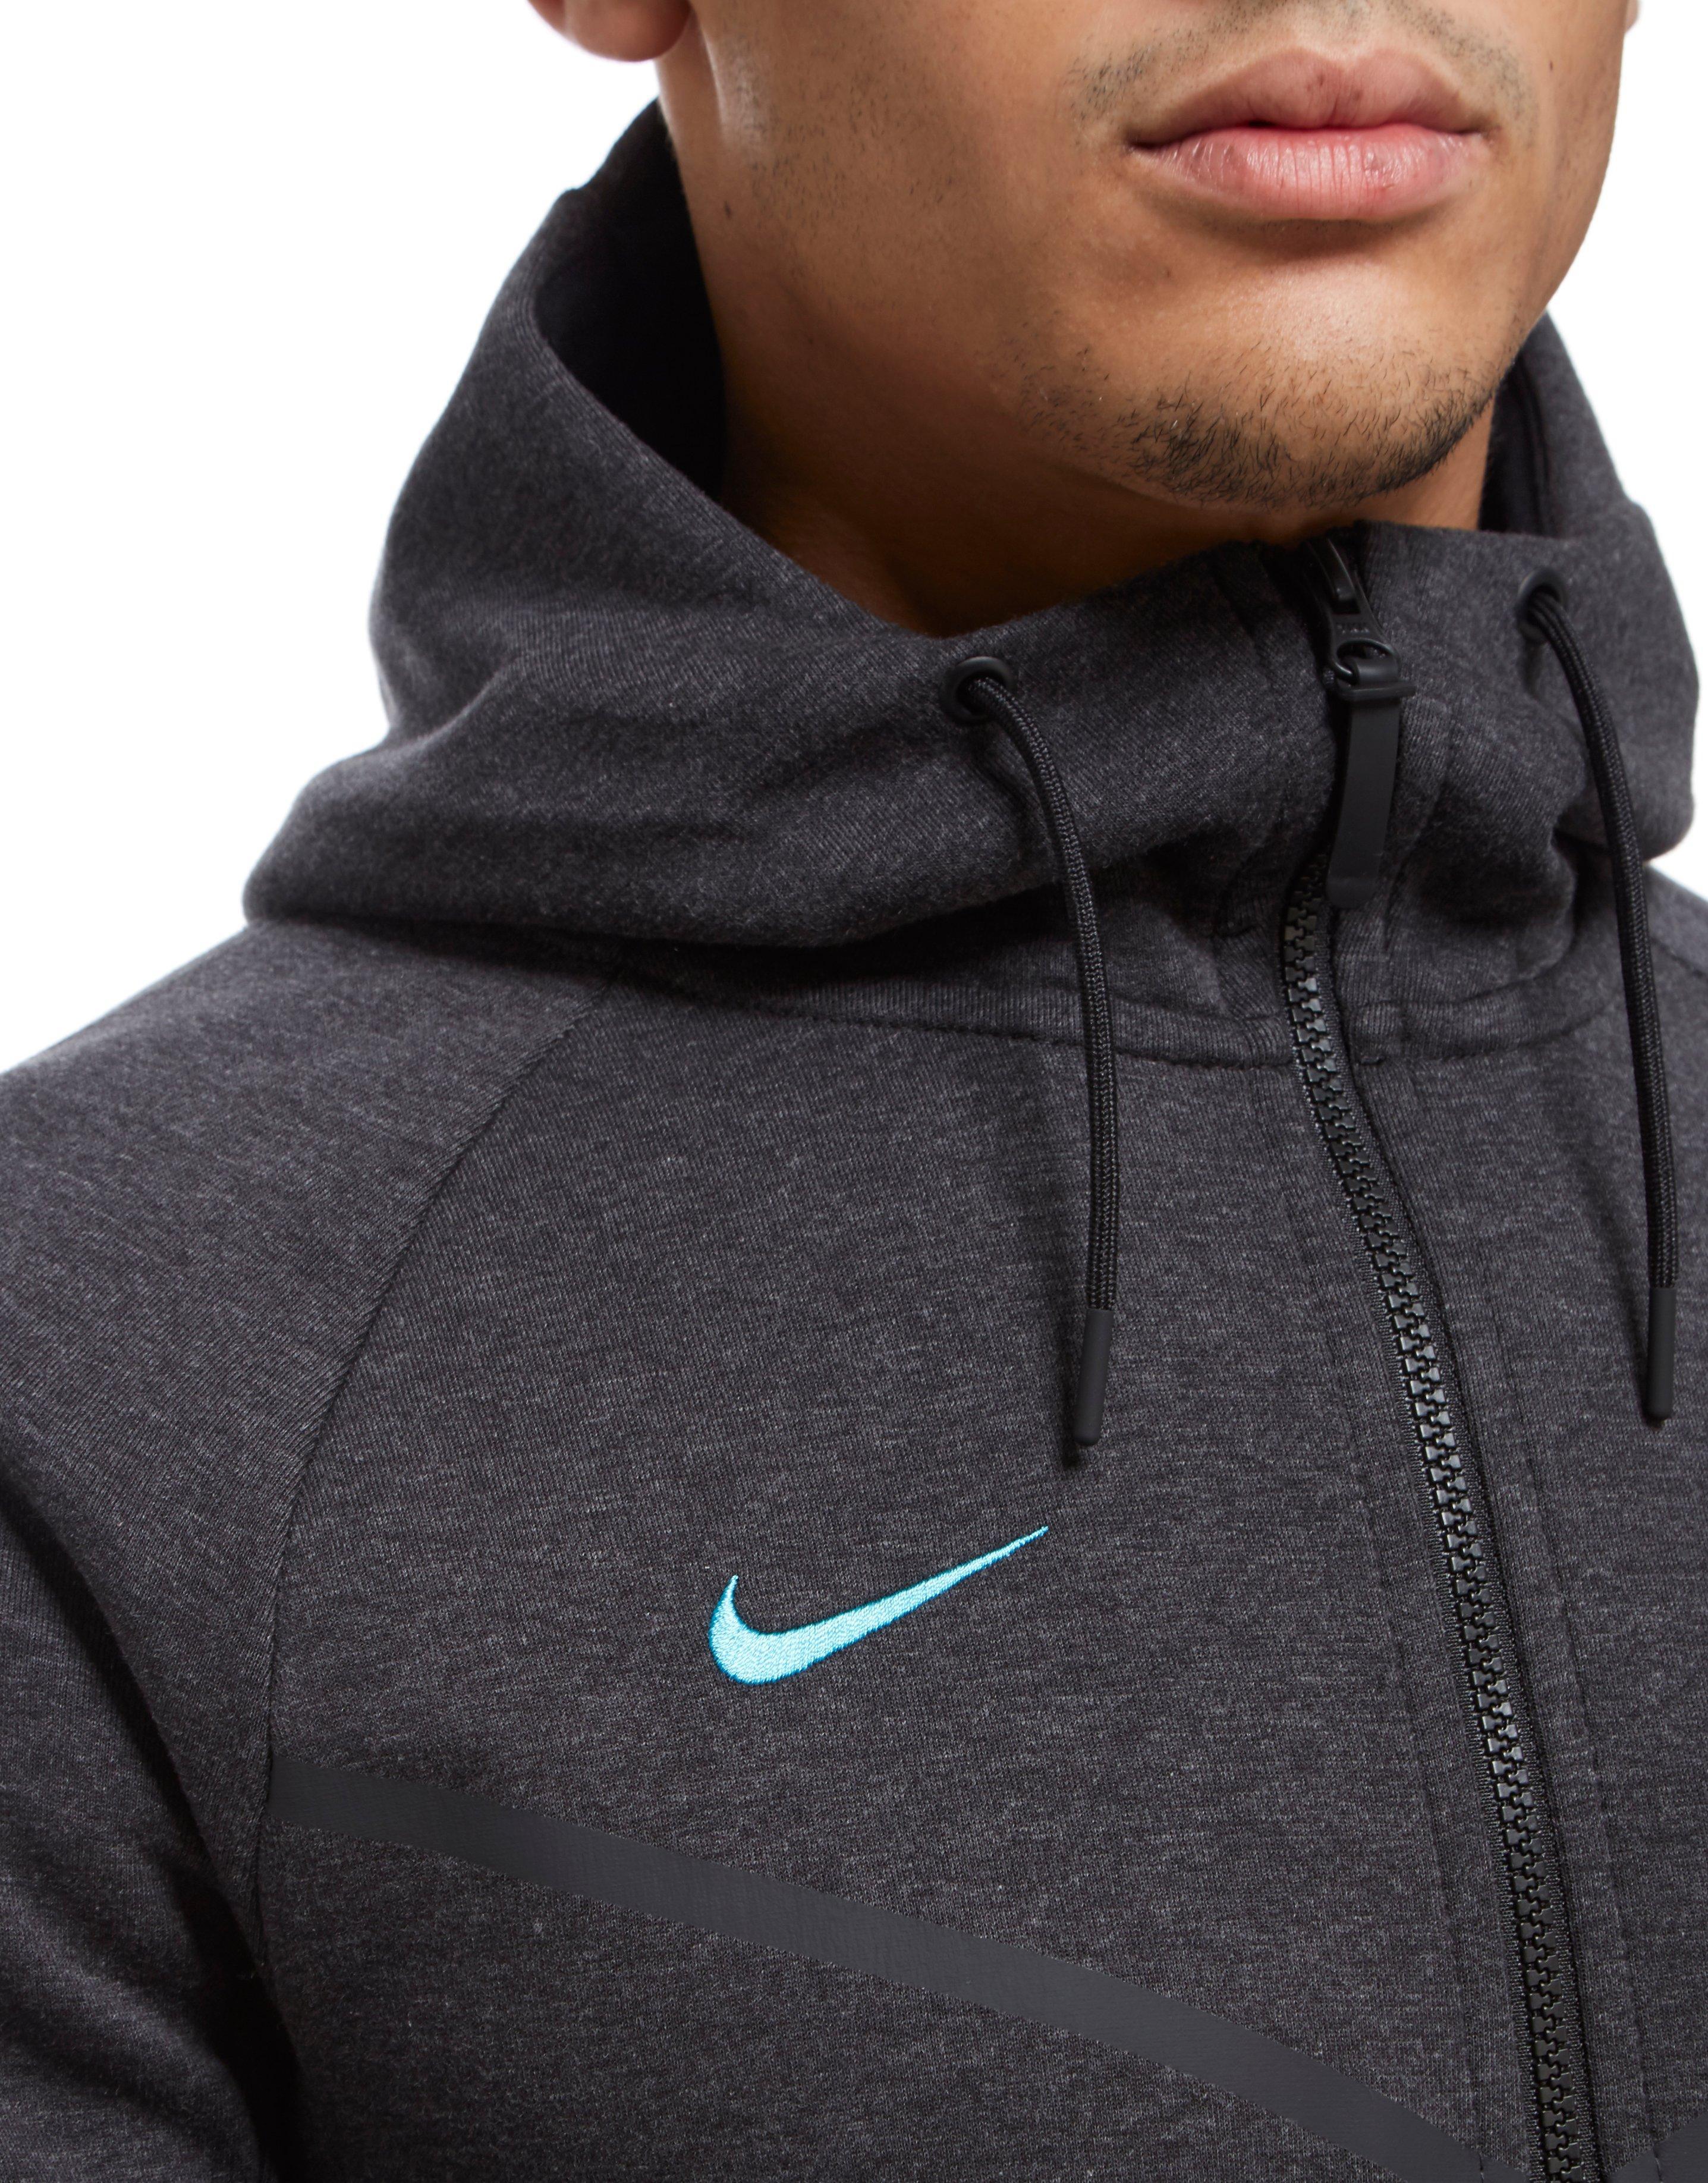 Lyst - Nike Chelsea Fc 2017 Tech Fleece Hoody in Black for Men